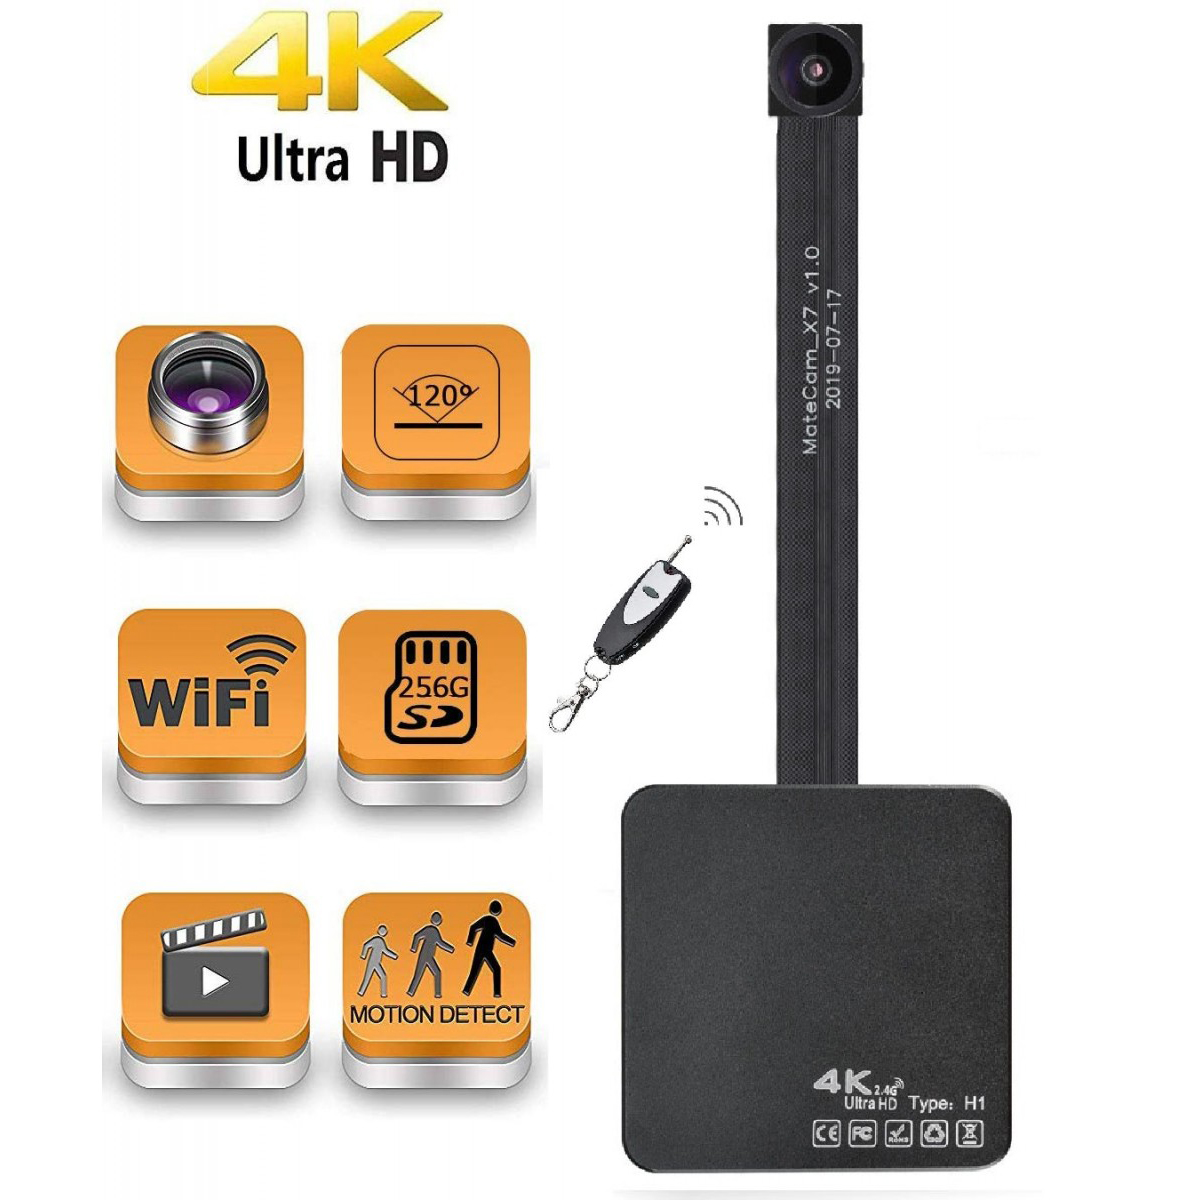 Lente 4K 120° Real Ultra HD WiFi Câmera Espiã Oculta Mini Câmera Portátil Sem Fio Gravador de Vídeo com Detecção de Movimento Nanny Cam para Monitoramento de Segurança Doméstica até 400GB